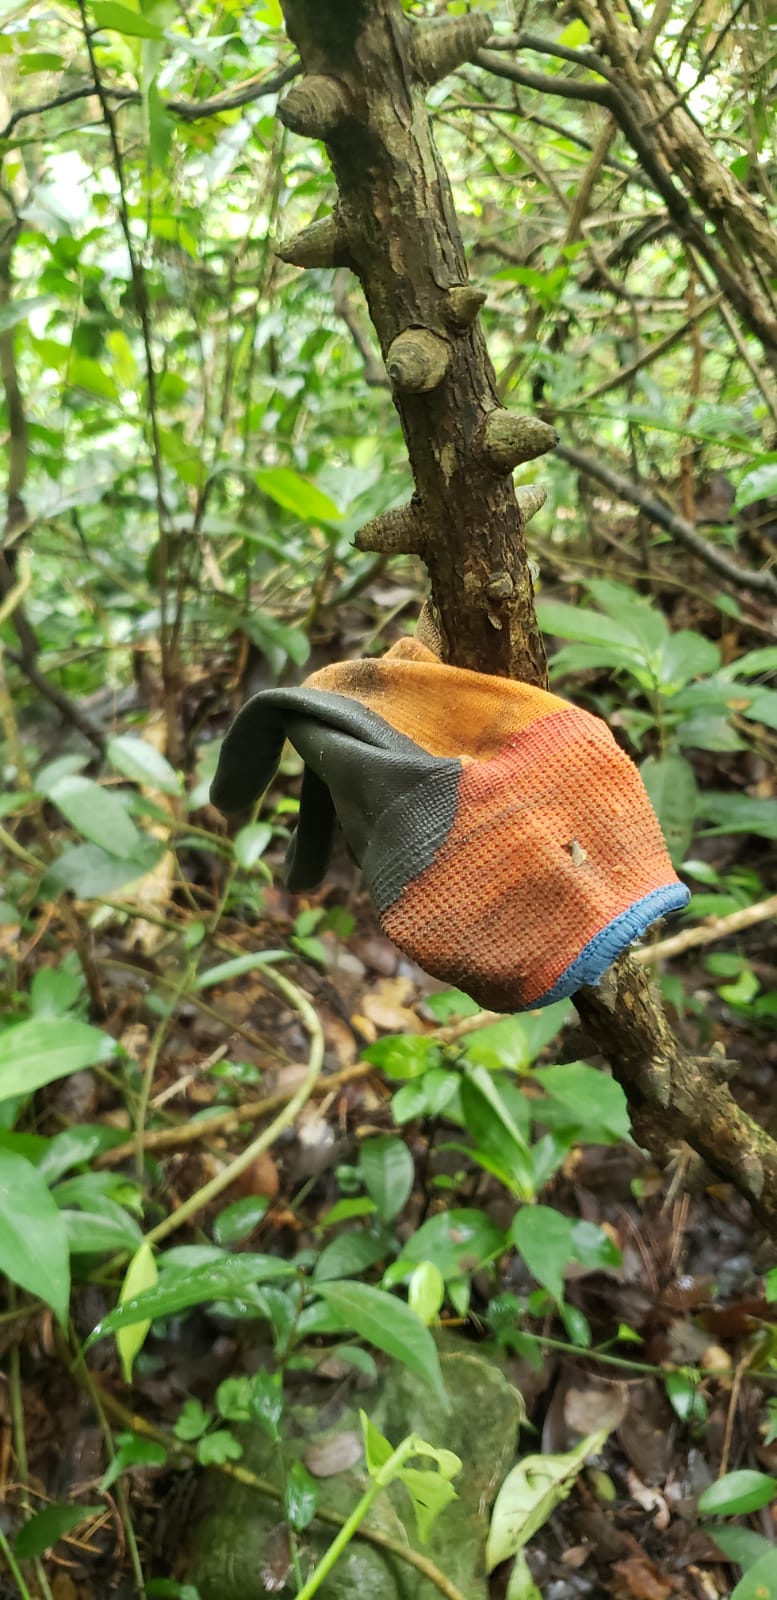 郊野义务搜索队于黄竹山一带的密林发现一只手套，怀疑属于失踪多日的甯国良。郊野义务搜索队提供图片